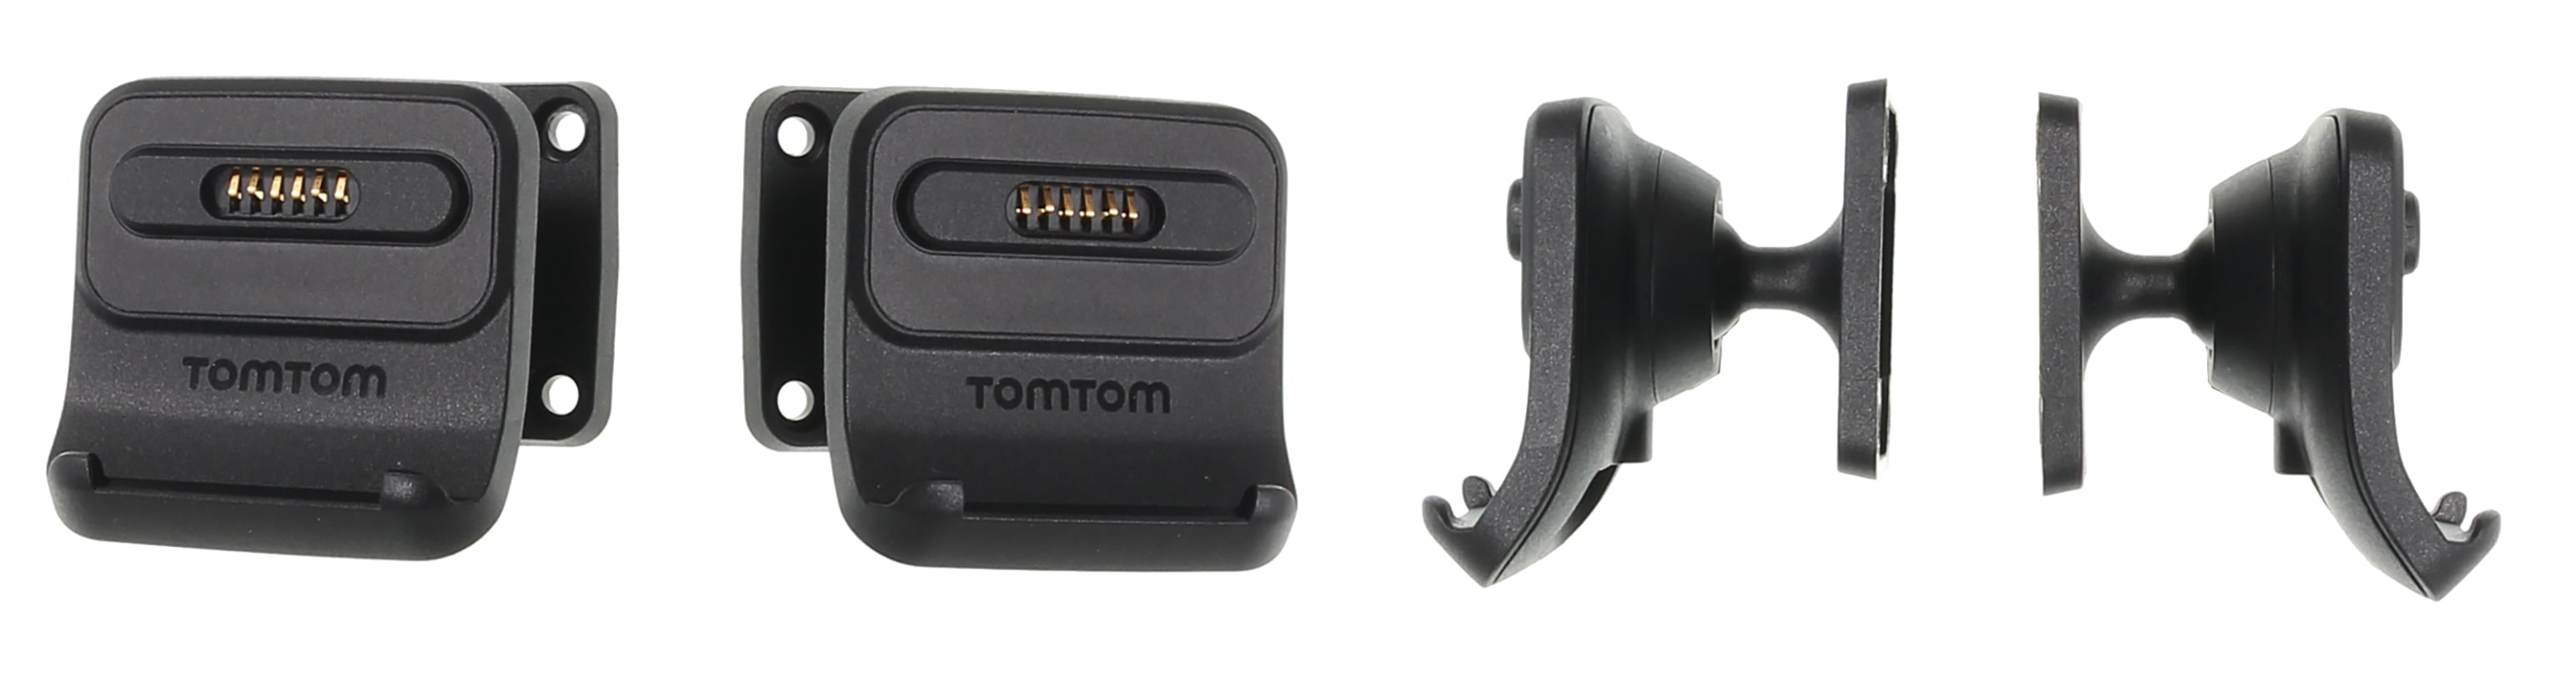 Active Dock Holder with Tilt Swivel for TomTom Go Premium X